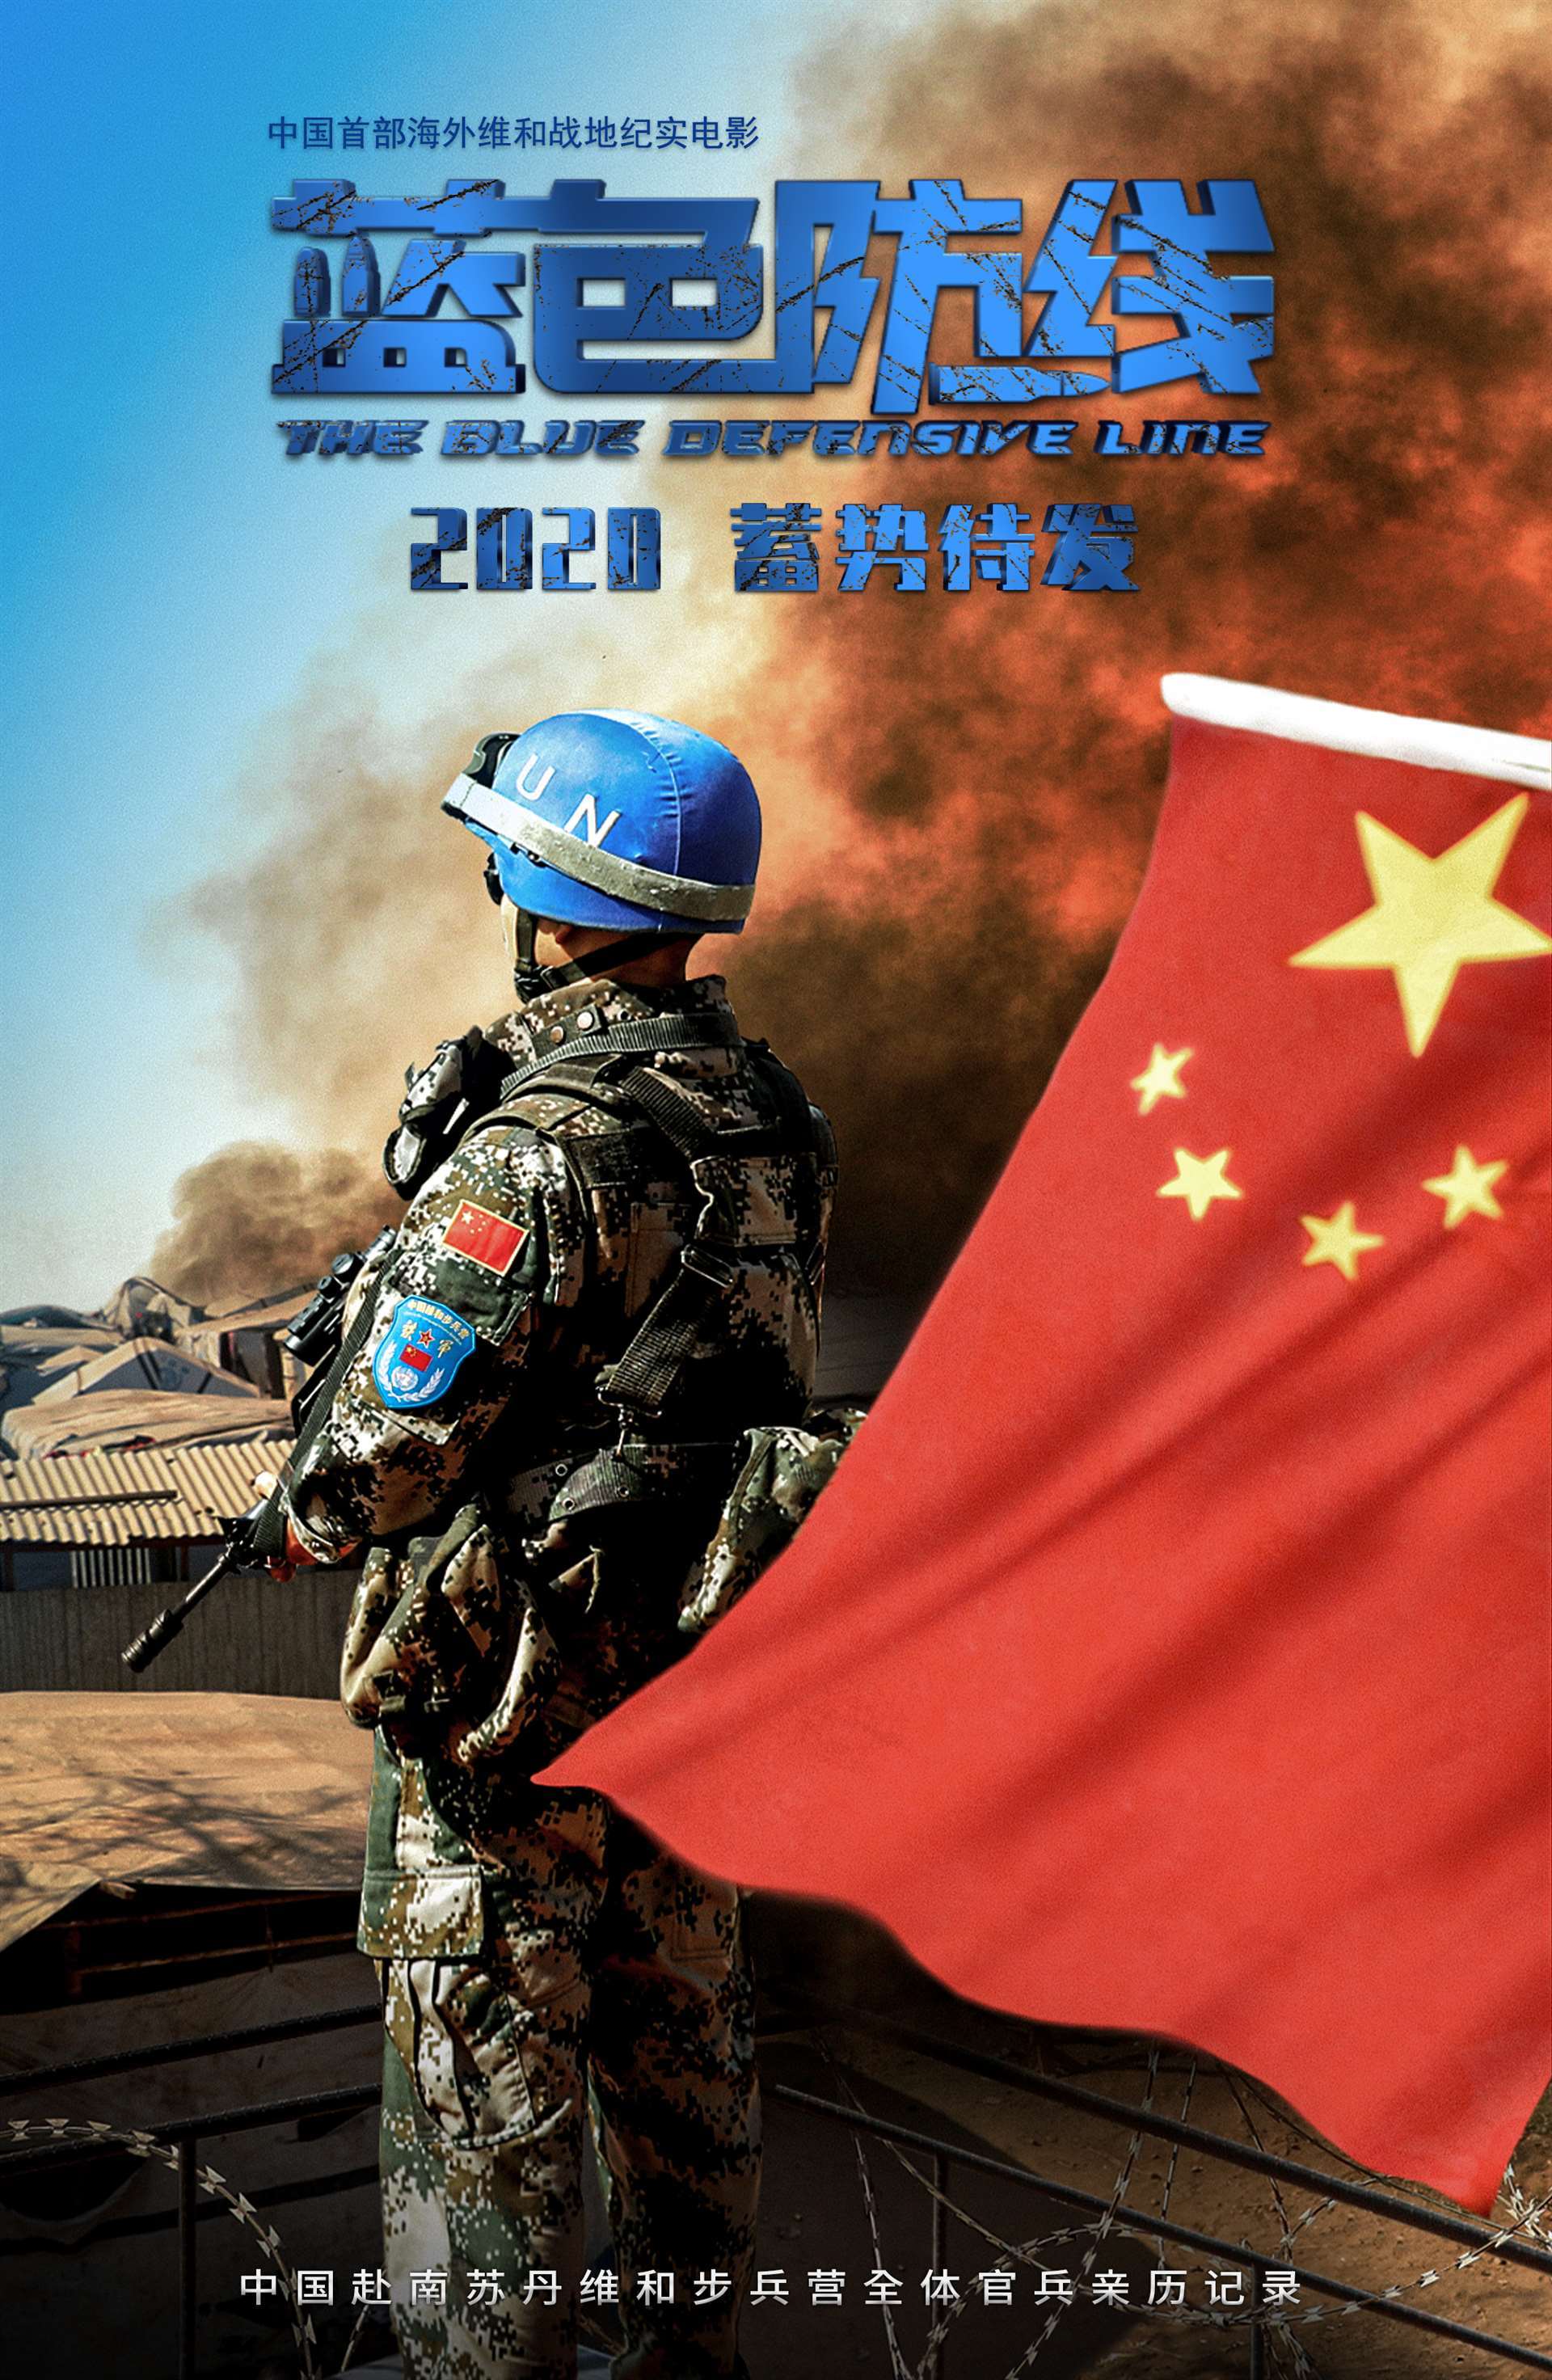 《蓝色防线》是中国首部海外维和战地纪实电影,该片历时五年跟踪拍摄